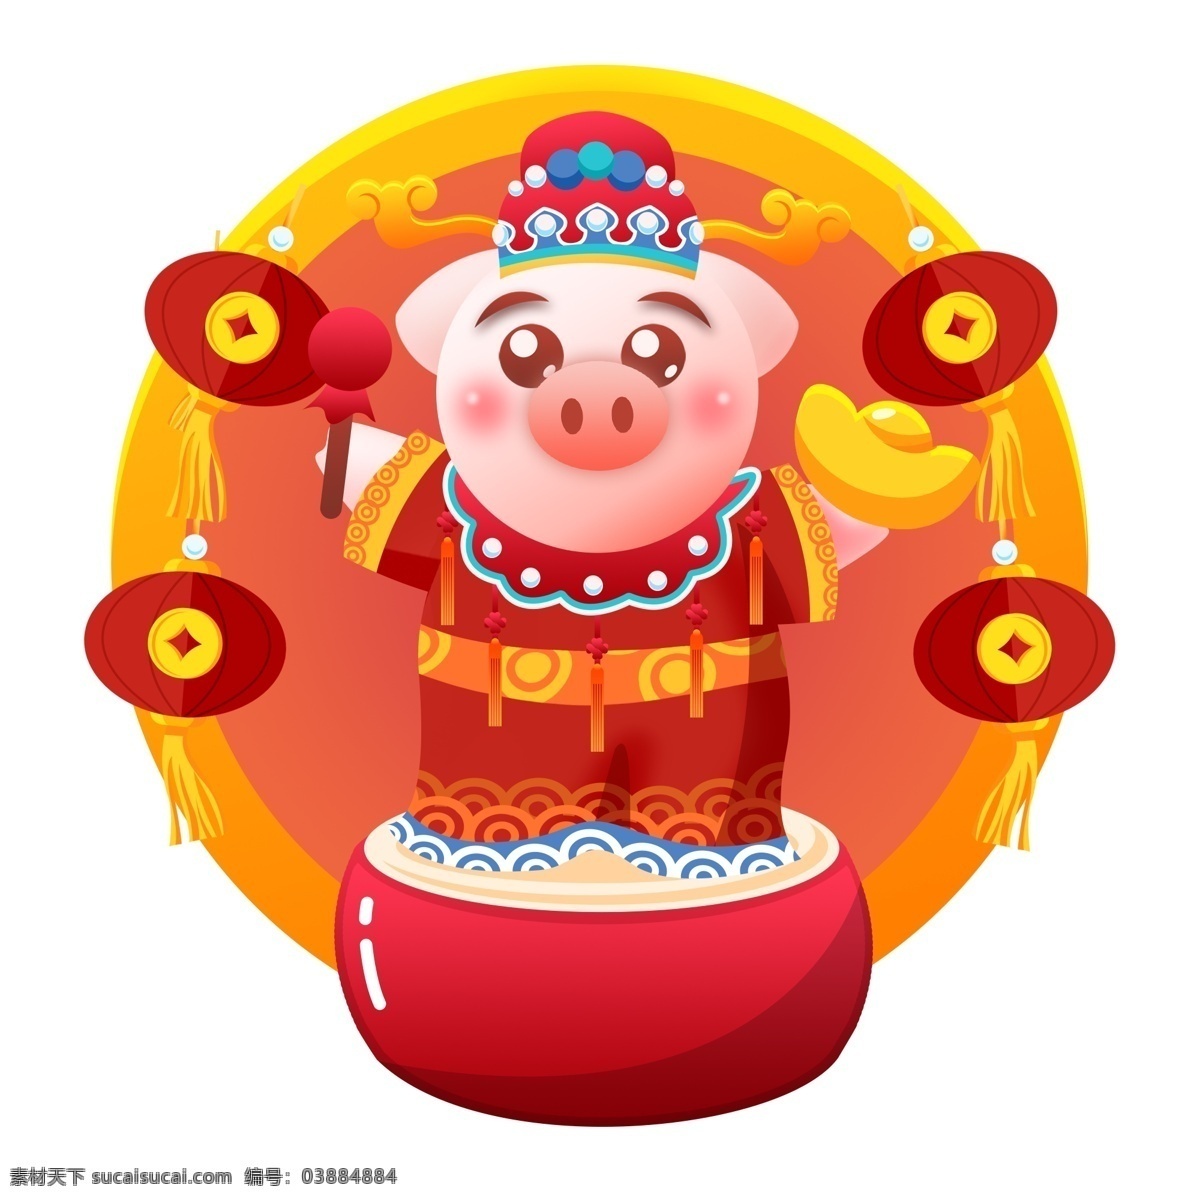 2019 春节 拜年 生肖 猪 财神 金币 灯笼 卡通 可爱 新年 新年快乐 元宝 鼓 鼓槌 财神爷